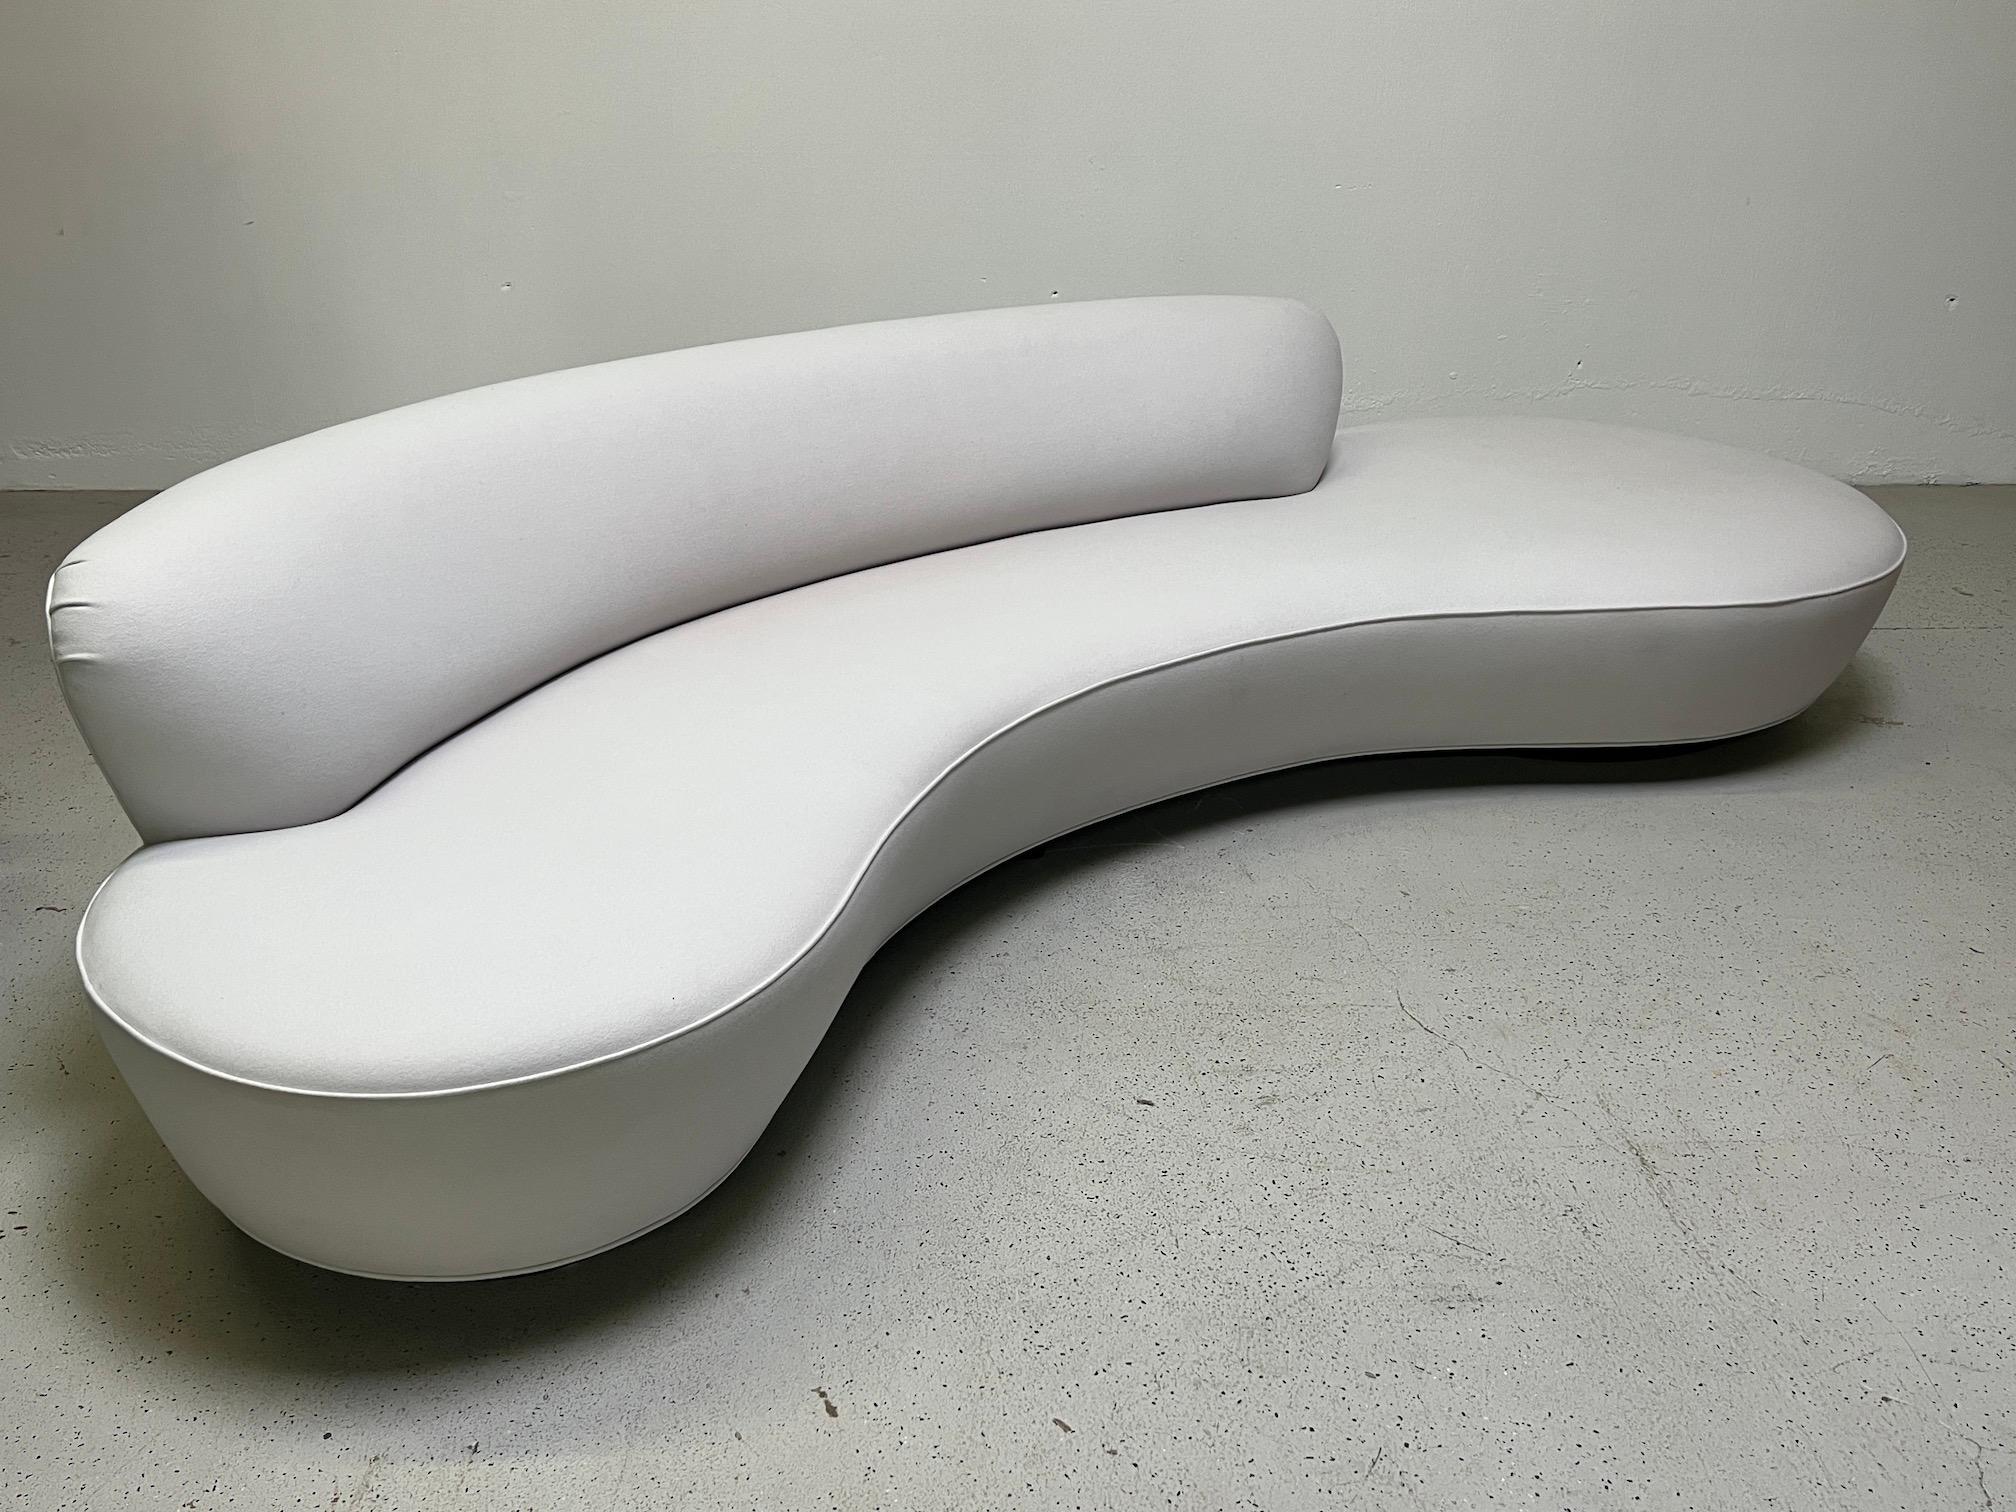 Ein großes und ikonisches Serpentinen-Sofa, entworfen von Vladimir Kagan. Dieses Sofa wurde vor etwa einem Jahrzehnt bei Kagan gekauft und mit einem hellgrauen HOLLY HUNT-Kaschmirstoff bezogen. Signiert mit Kagan-Plakette am Boden.